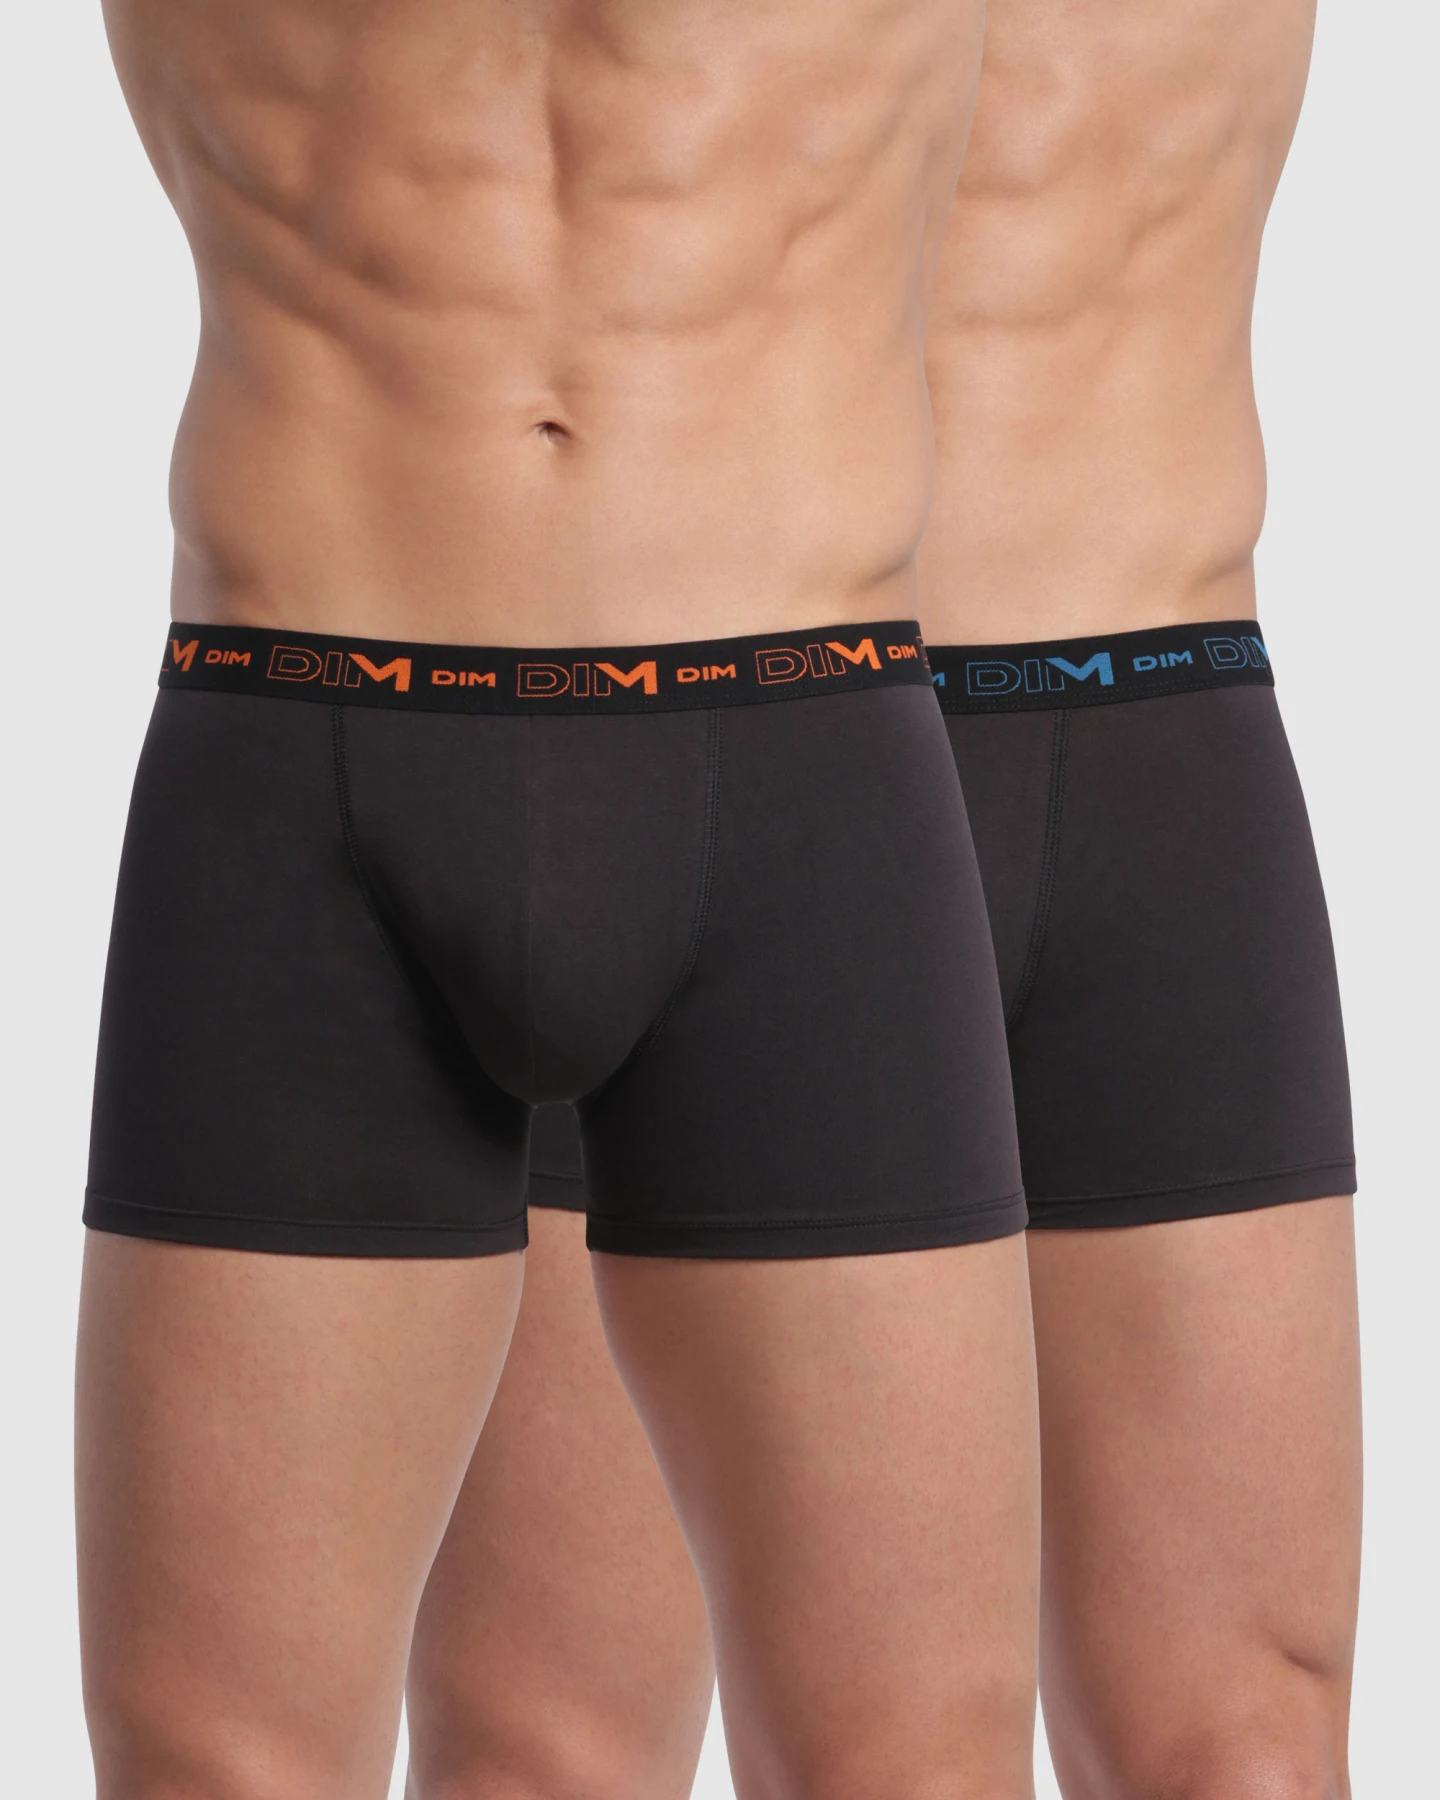 Grundlæggende stil stretch cotton boxershorts 2 Pack for maksimal DIM komfort